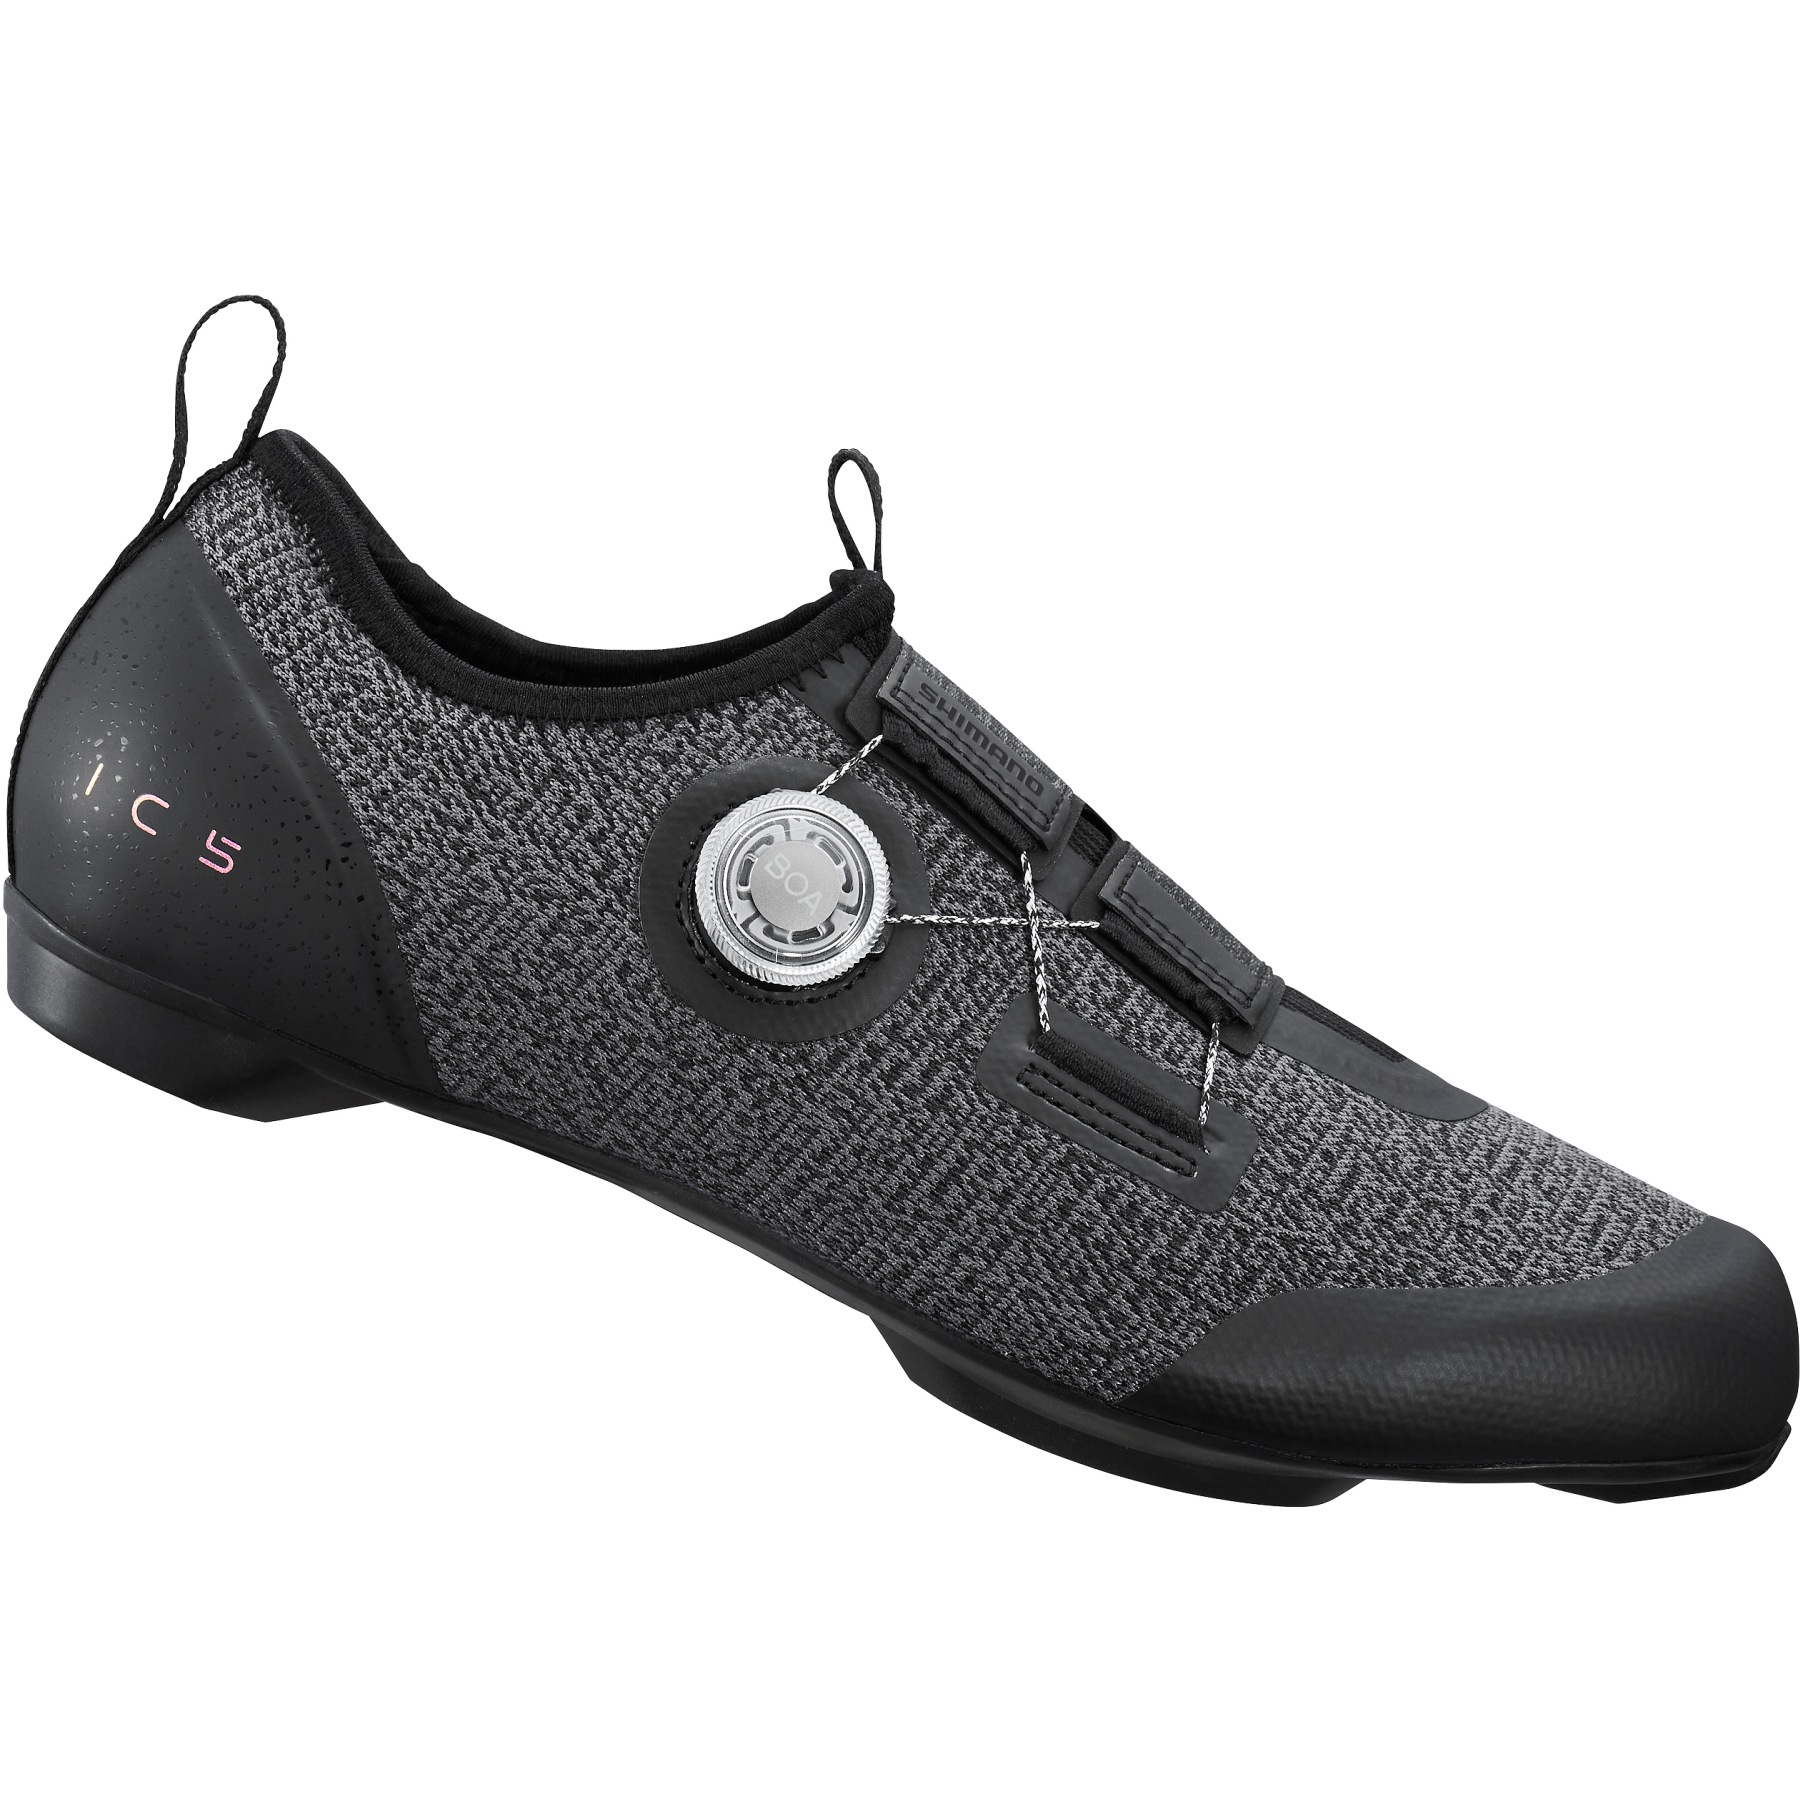 Produktbild von Shimano SH-IC501 Indoor Rad Schuhe - schwarz